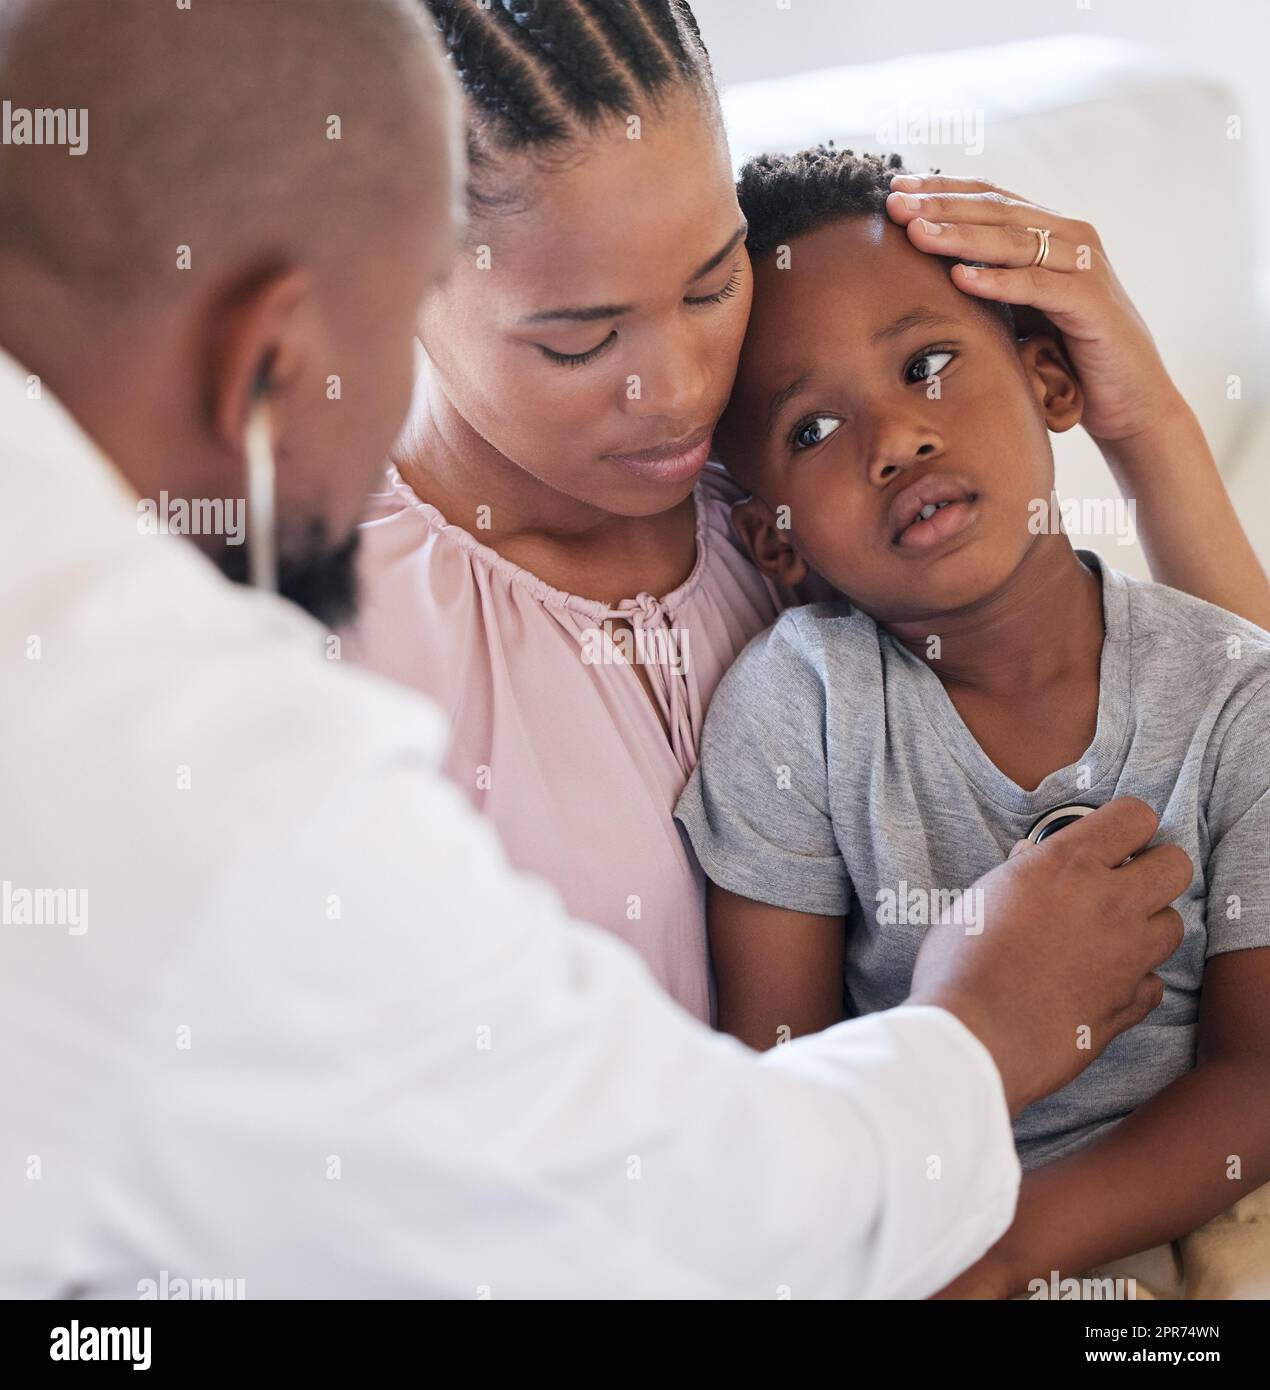 Un pédiatre afro-américain examine un garçon malade avec un stéthoscope lors d'une visite avec une maman. Médecin vérifiant les poumons cardiaques pendant le contrôle à l'hôpital. Garçon malade ou triste recevant des soins médicaux Banque D'Images